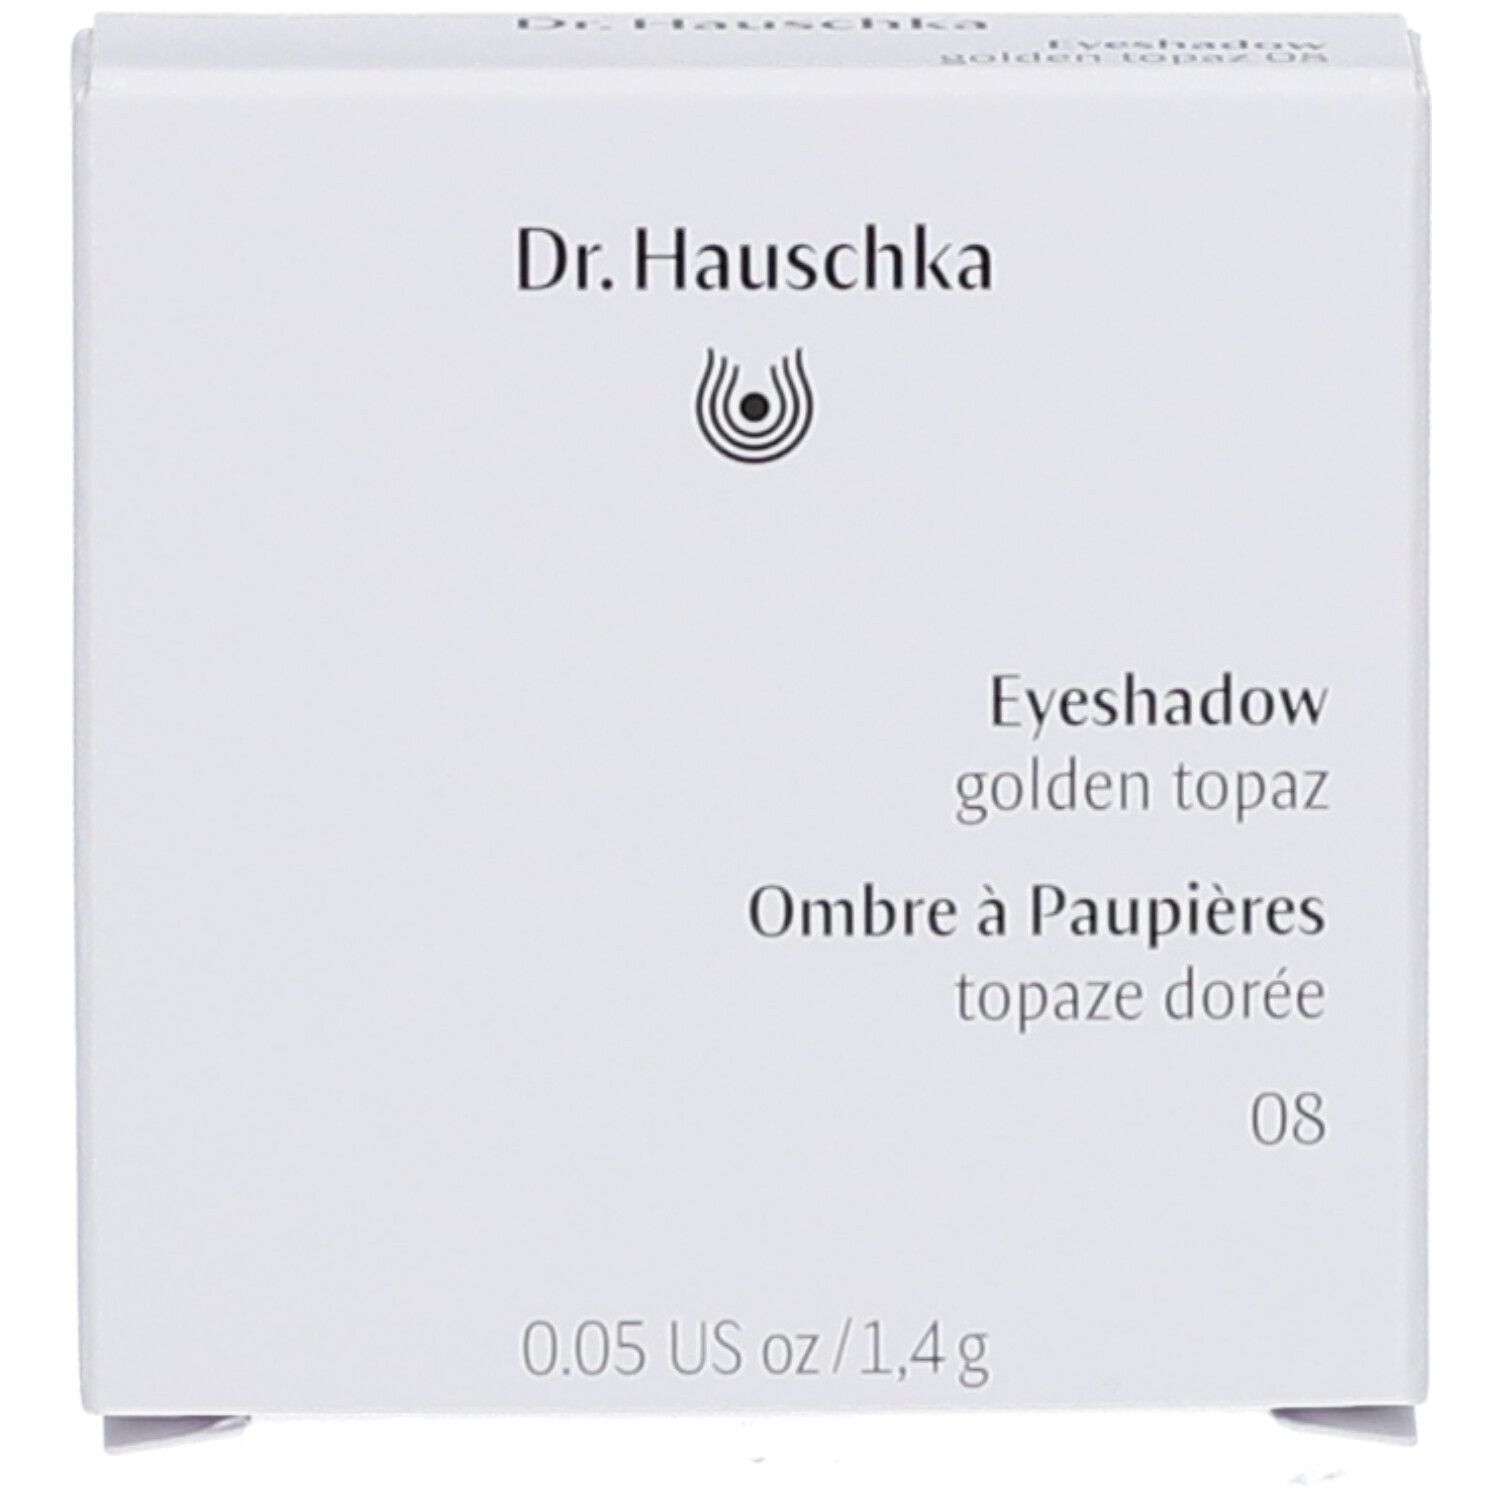 Dr. Hauschka Eyeshadow golden topaz 08 1,4g